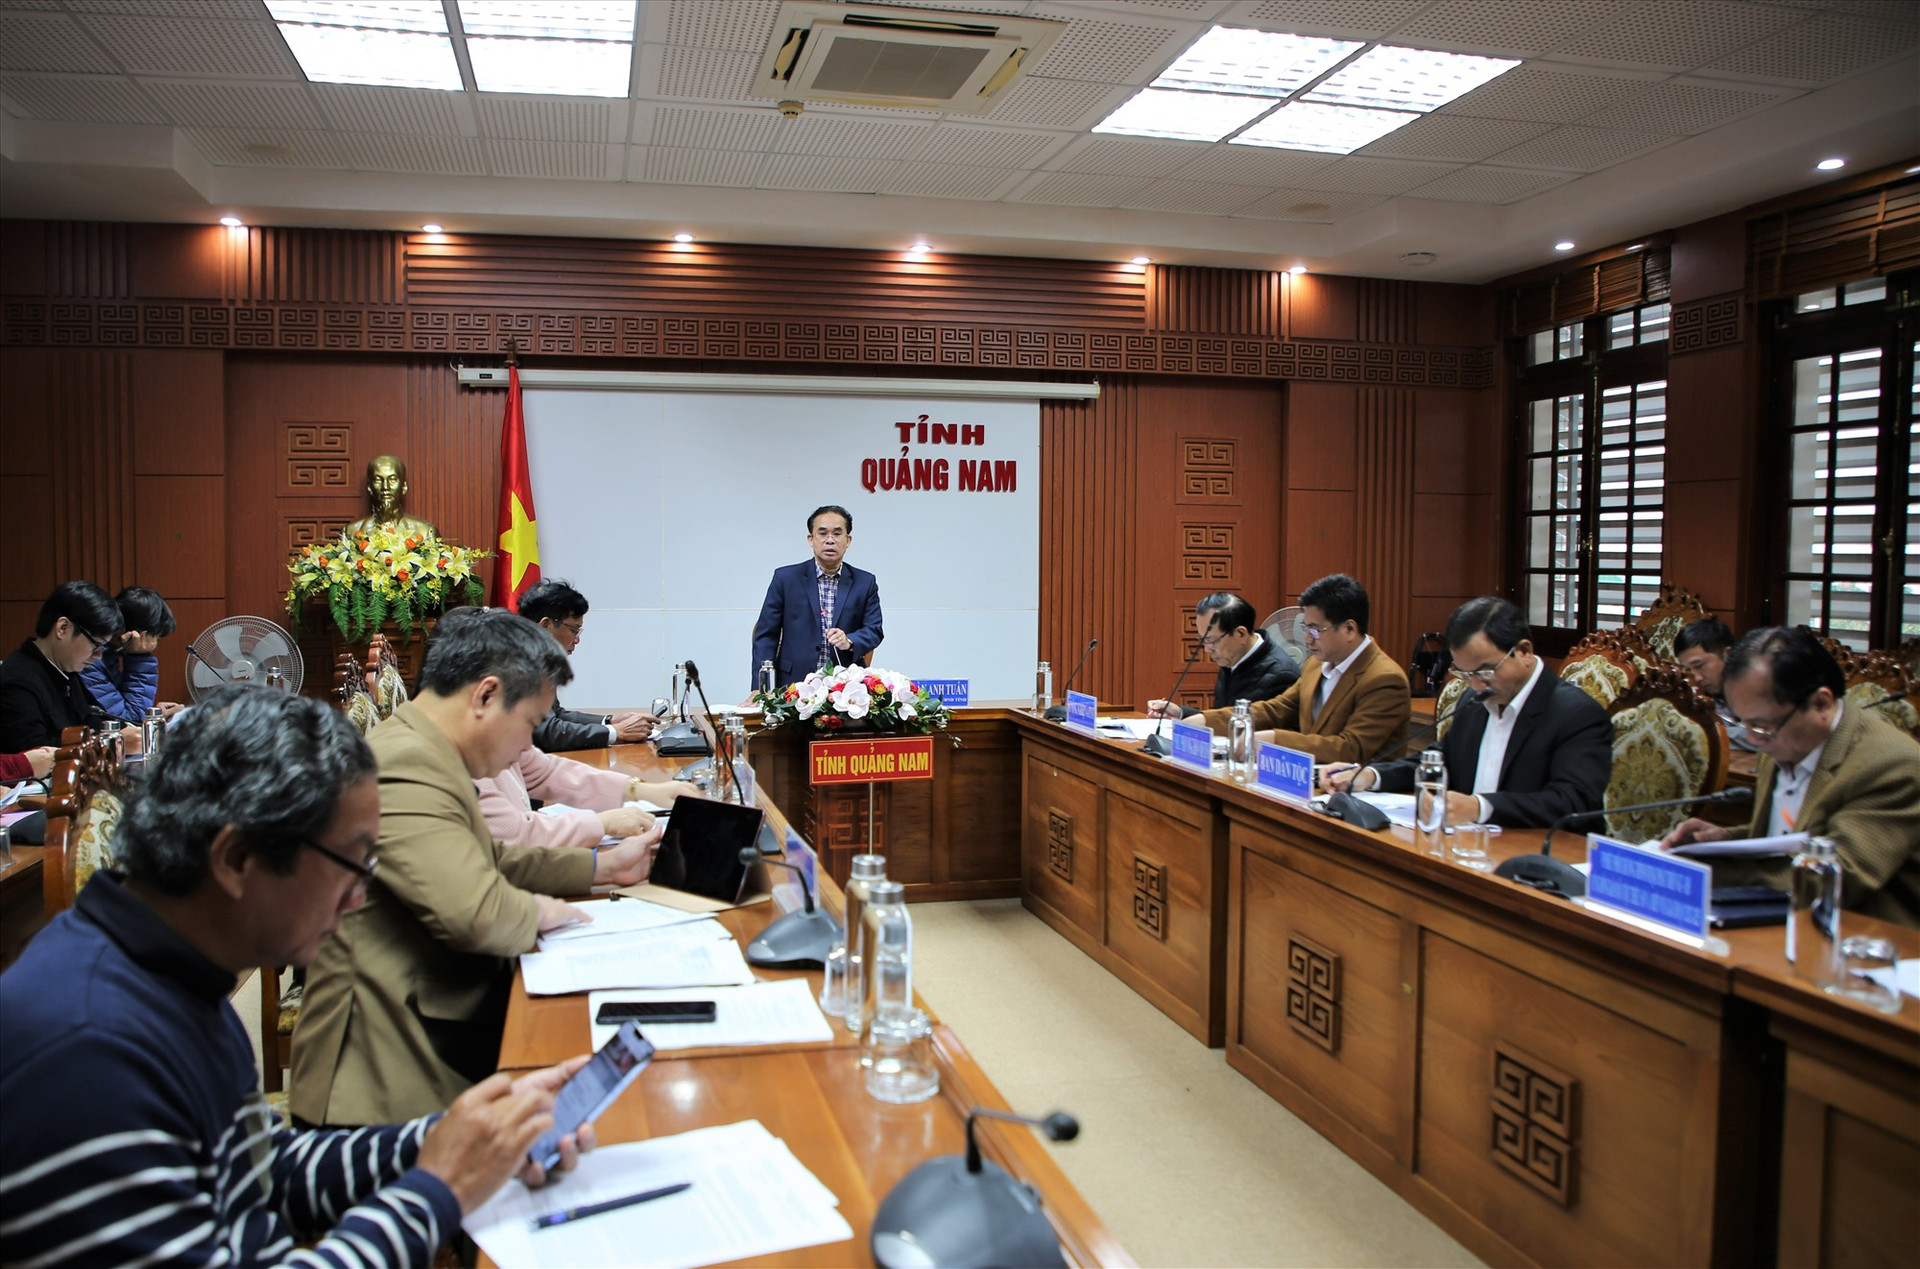 Phó Chủ tịch UBND tỉnh Trần Anh Tuấn phát biểu tại cuộc họp. Ảnh: A.N